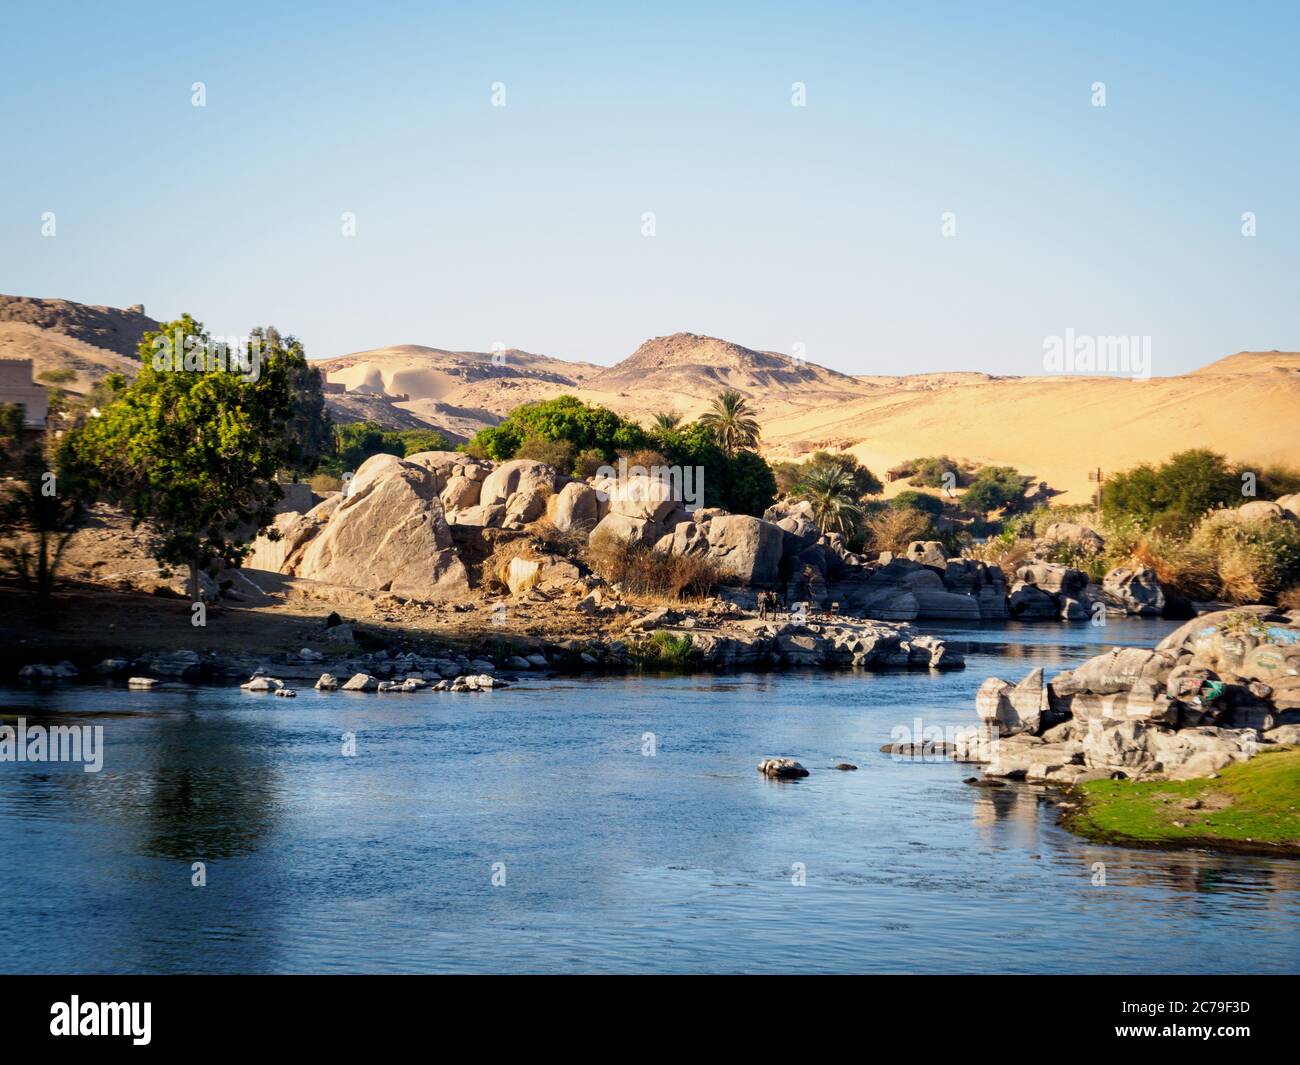 el río nilo se encuentra con el sahara y formaciones rocosas para formar un paisaje espectacular cerca de asuán Foto de stock